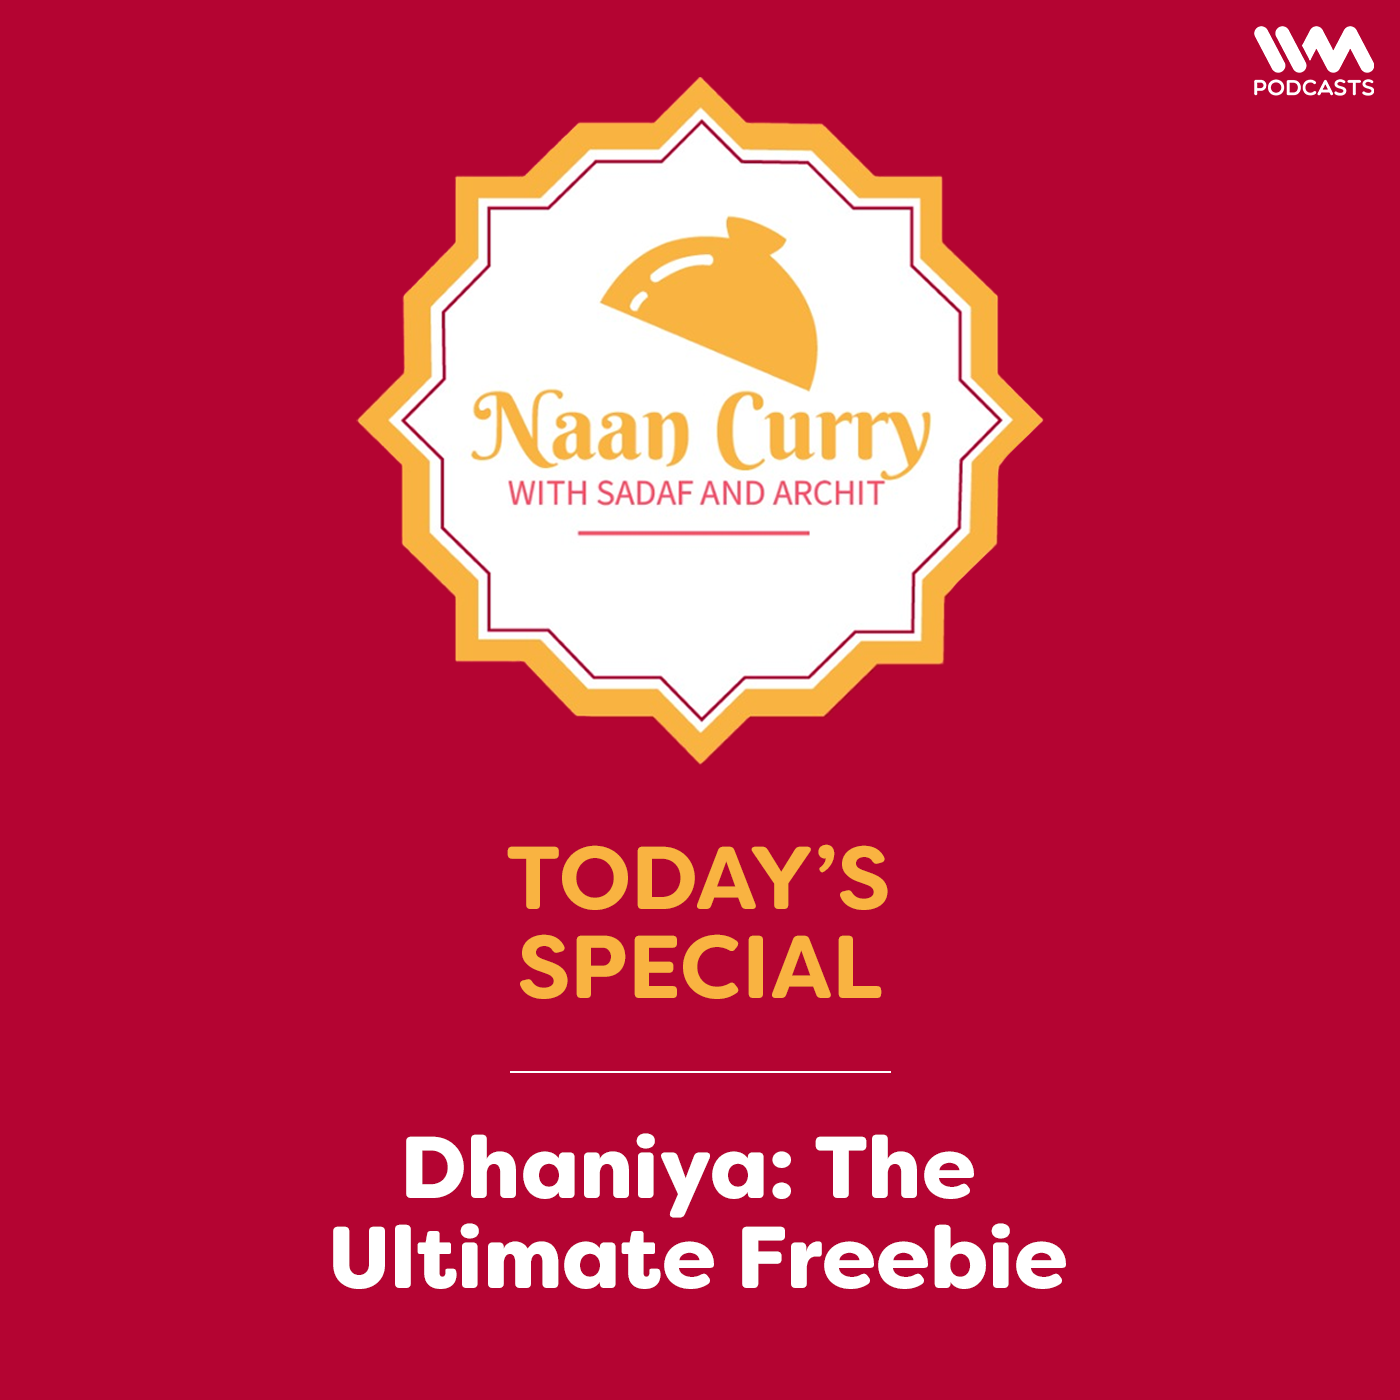 Dhaniya: The Ultimate Freebie